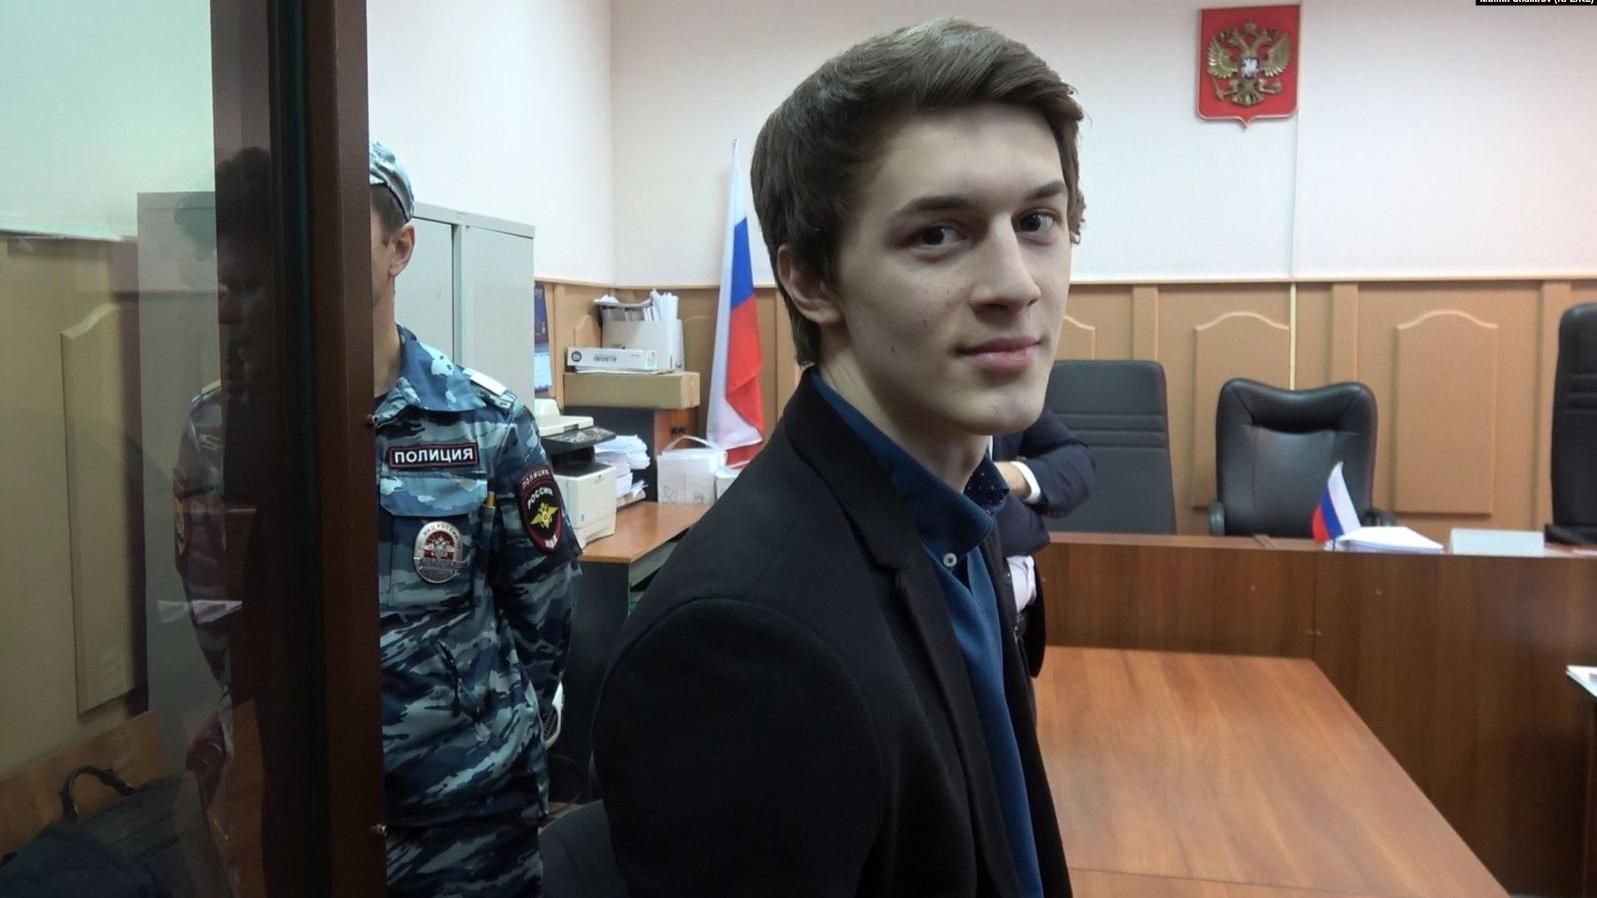 В России осудили студента на 3 года условно за его видеоблог: детали